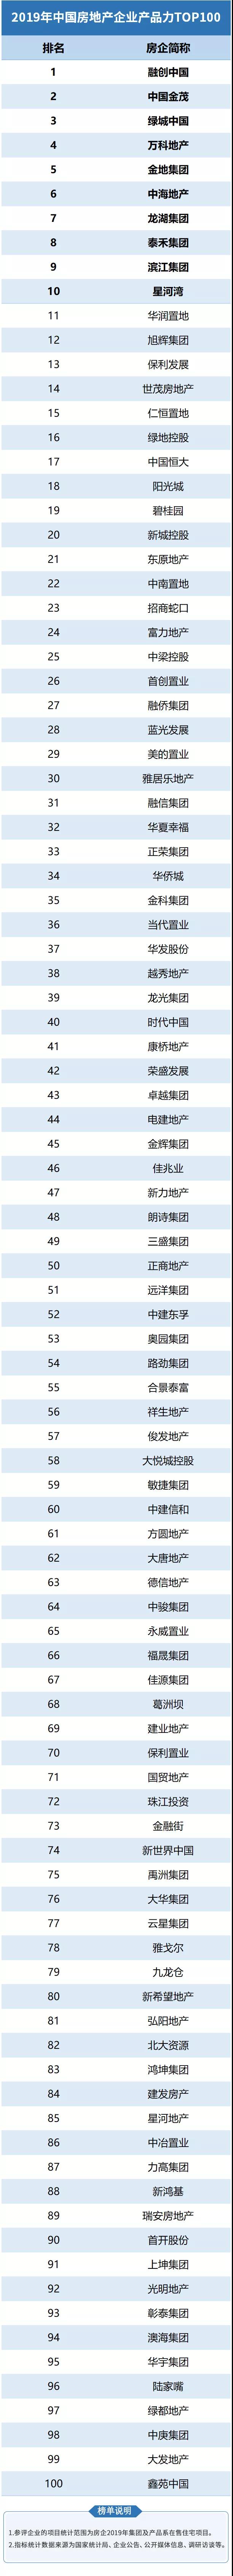 2019瘦腿产品排行榜_2019年中国房企产品力排行榜TOP100发布